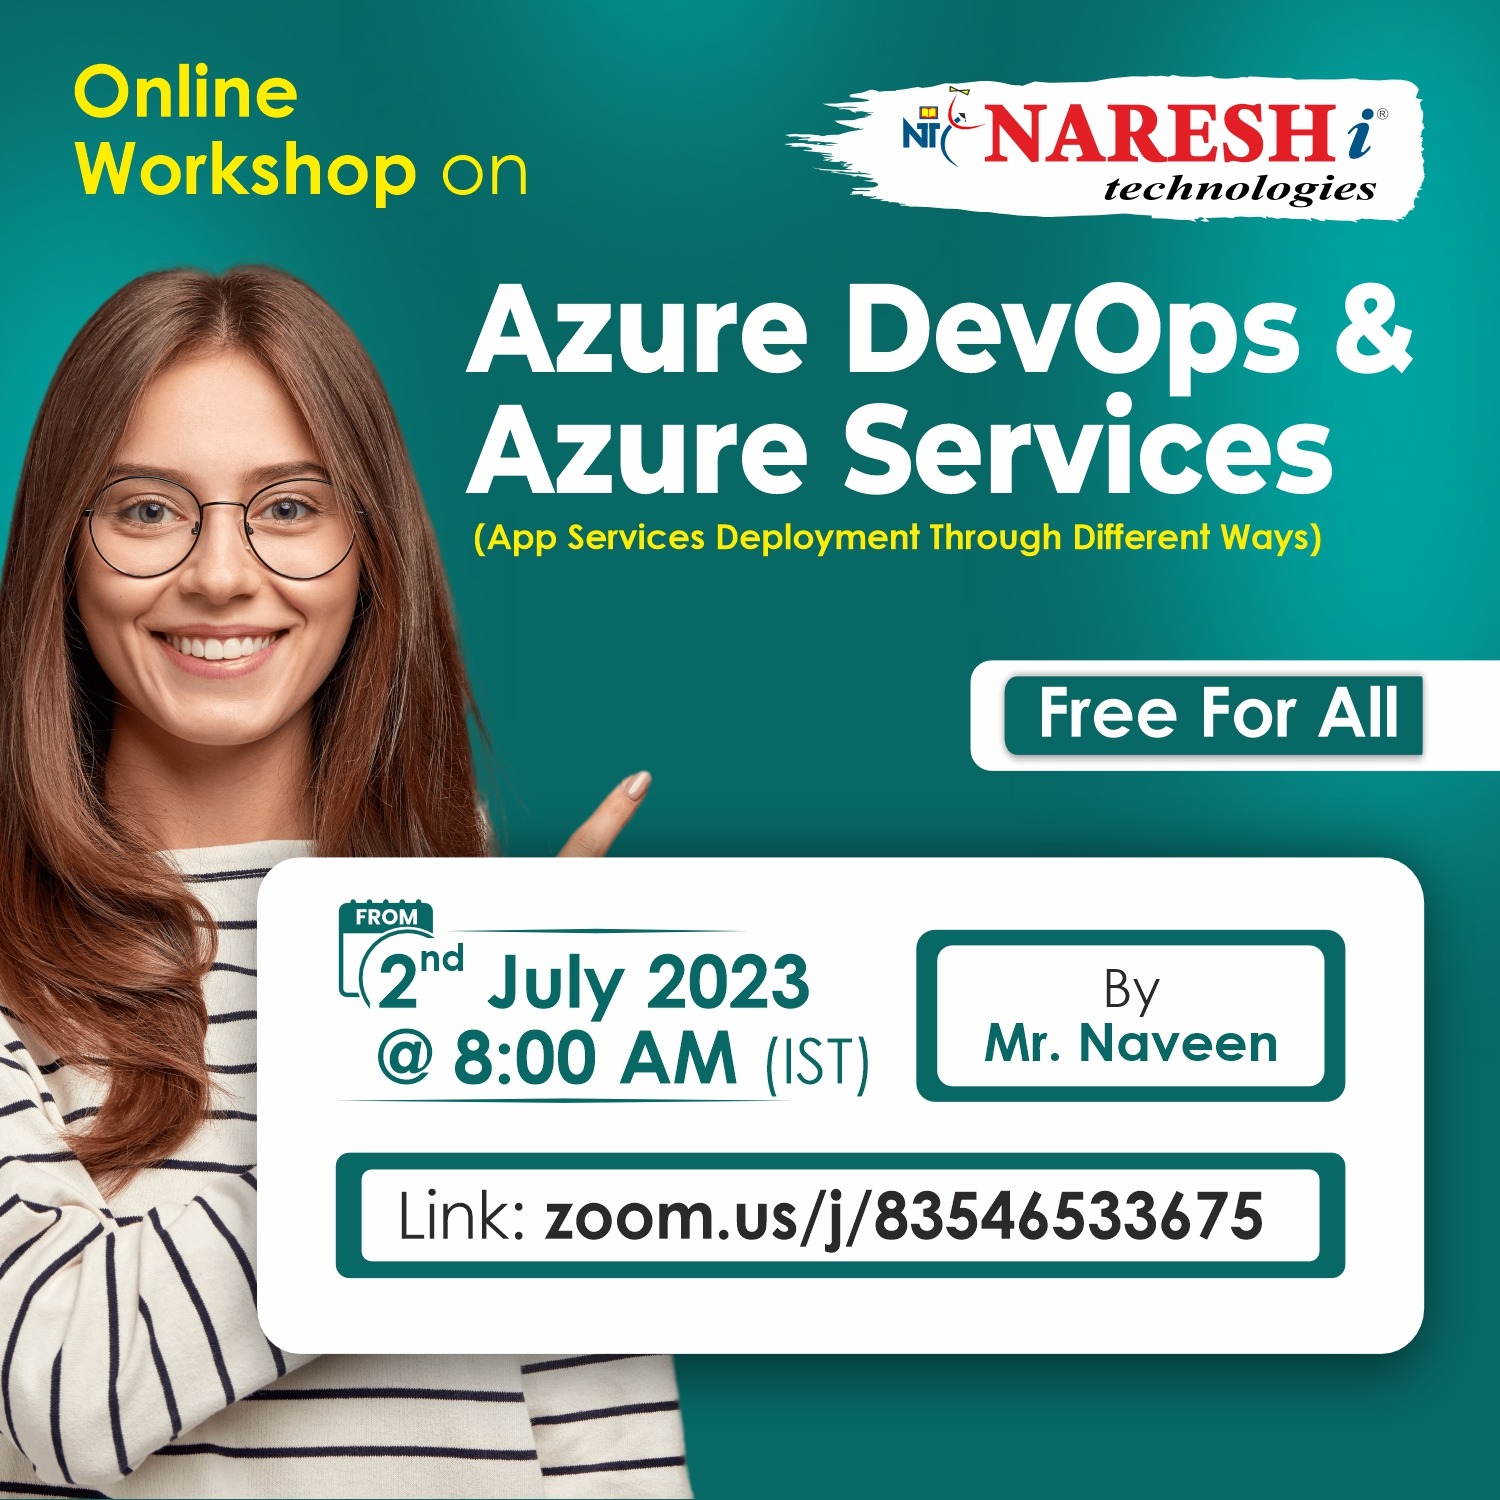 Free Online Workshop On Azure DevOps & Azure Services in NareshIT, Online Event